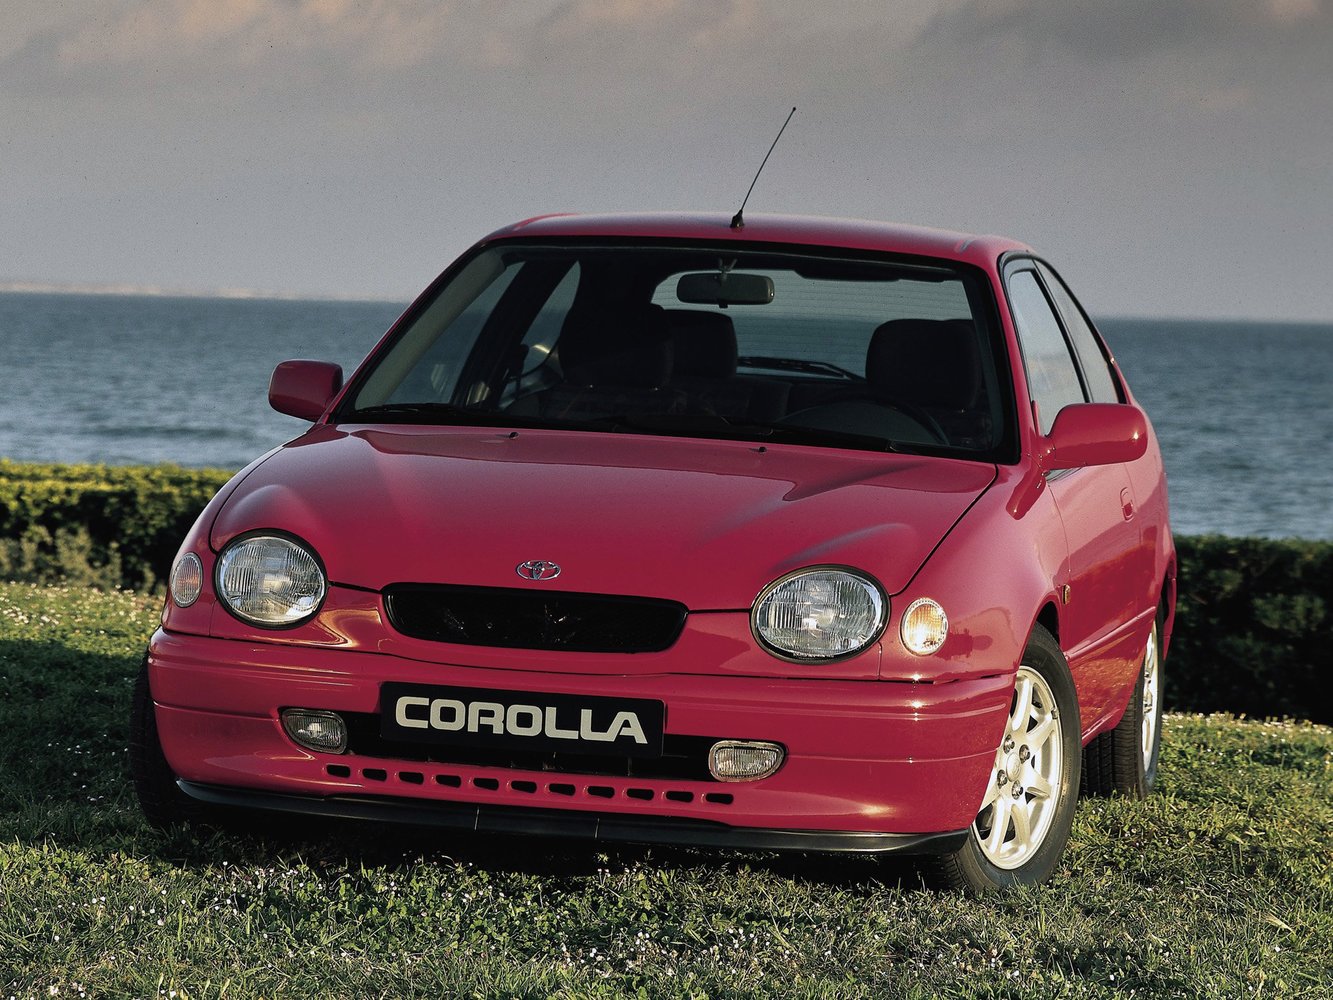 хэтчбек 5 дв. Toyota Corolla 1997 - 2000г выпуска модификация 1.3 AT (85 л.с.)